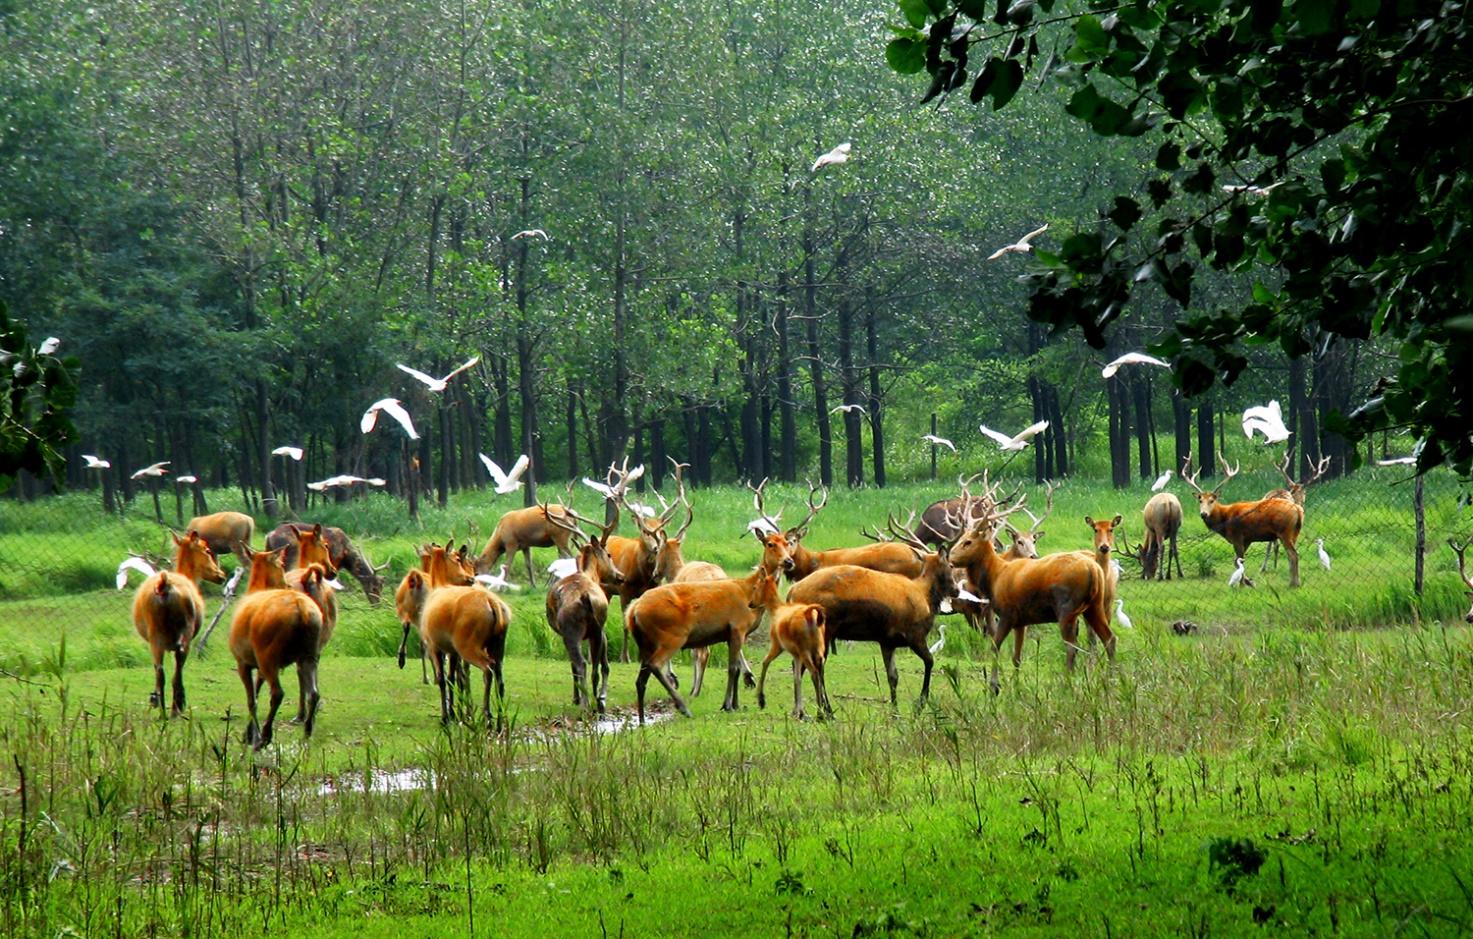 大丰境内共有麋鹿和湿地珍禽2个国家级自然保护区,是世界湿地自然遗产